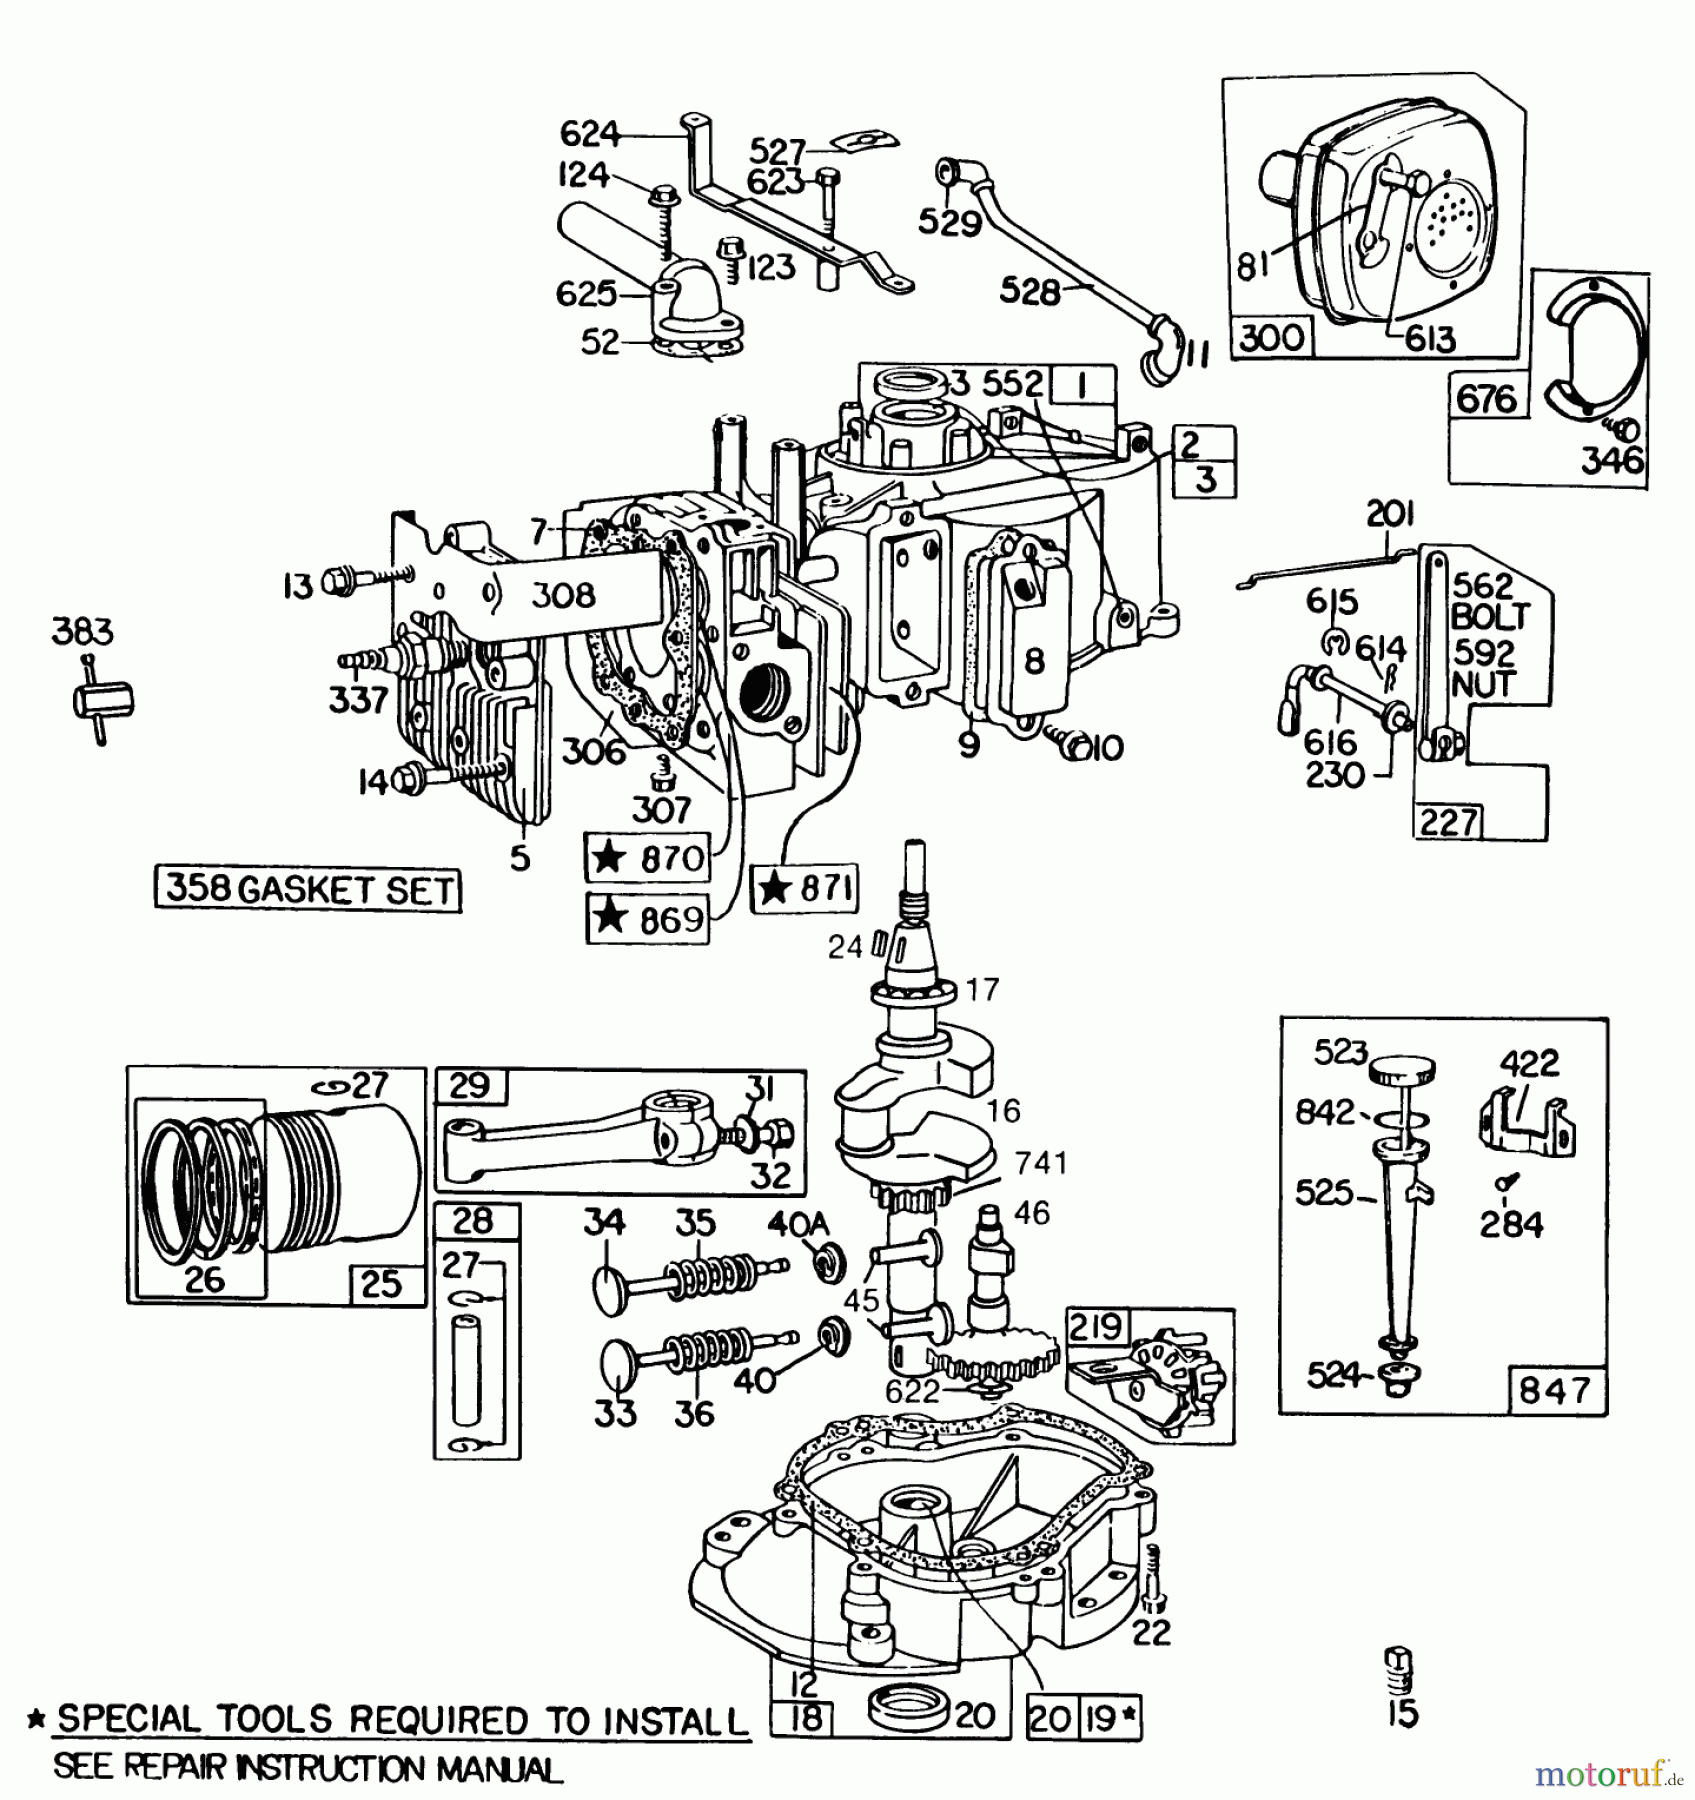  Toro Neu Mowers, Walk-Behind Seite 2 22015 - Toro Lawnmower, 1986 (6000001-6999999) ENGINE BRIGGS & STRATTON MODEL 131922-0163-01 #1